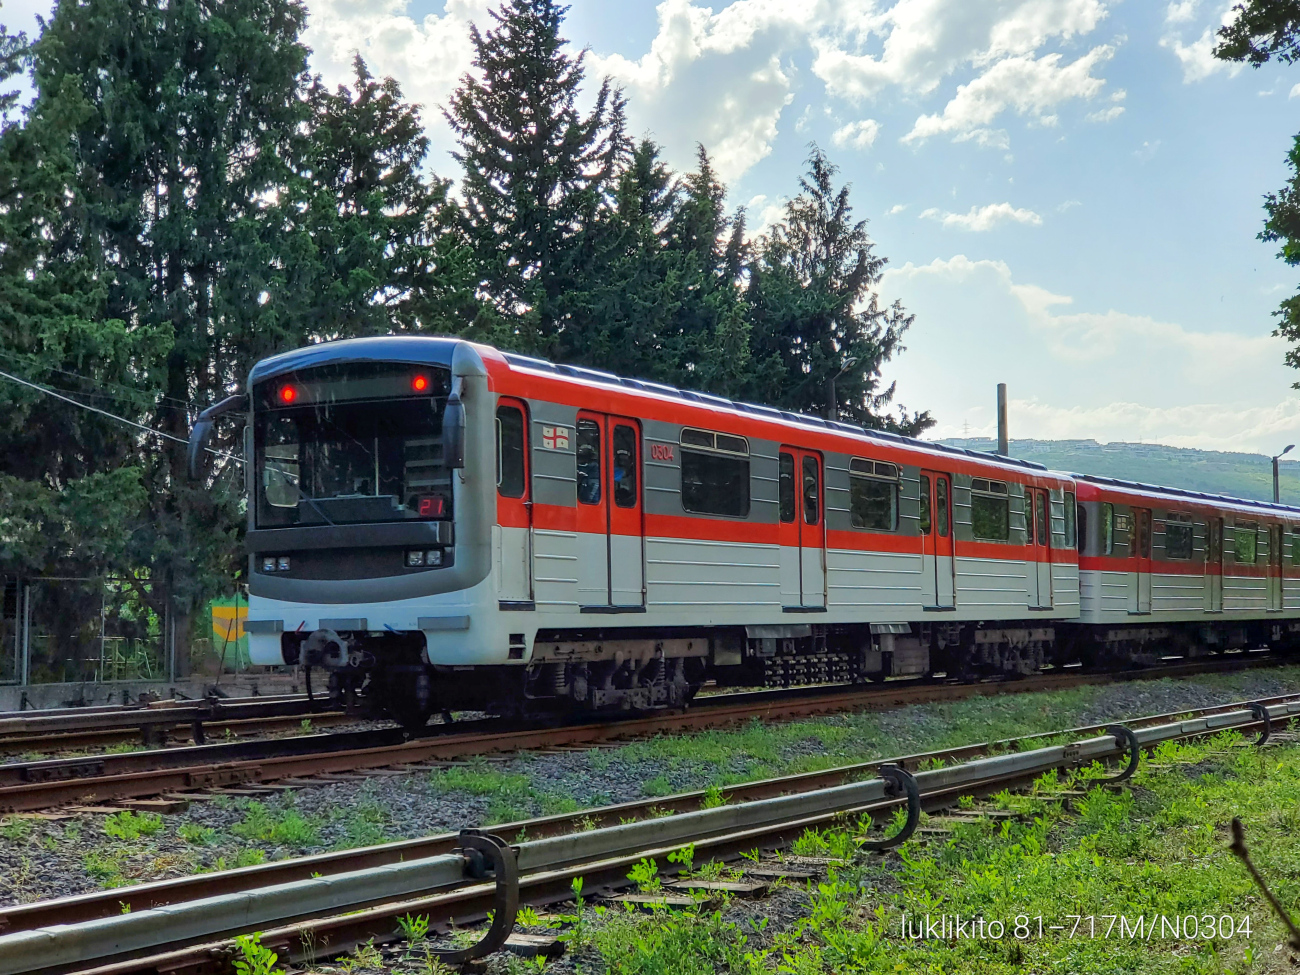 Тбилиси, 81-717M № 0304